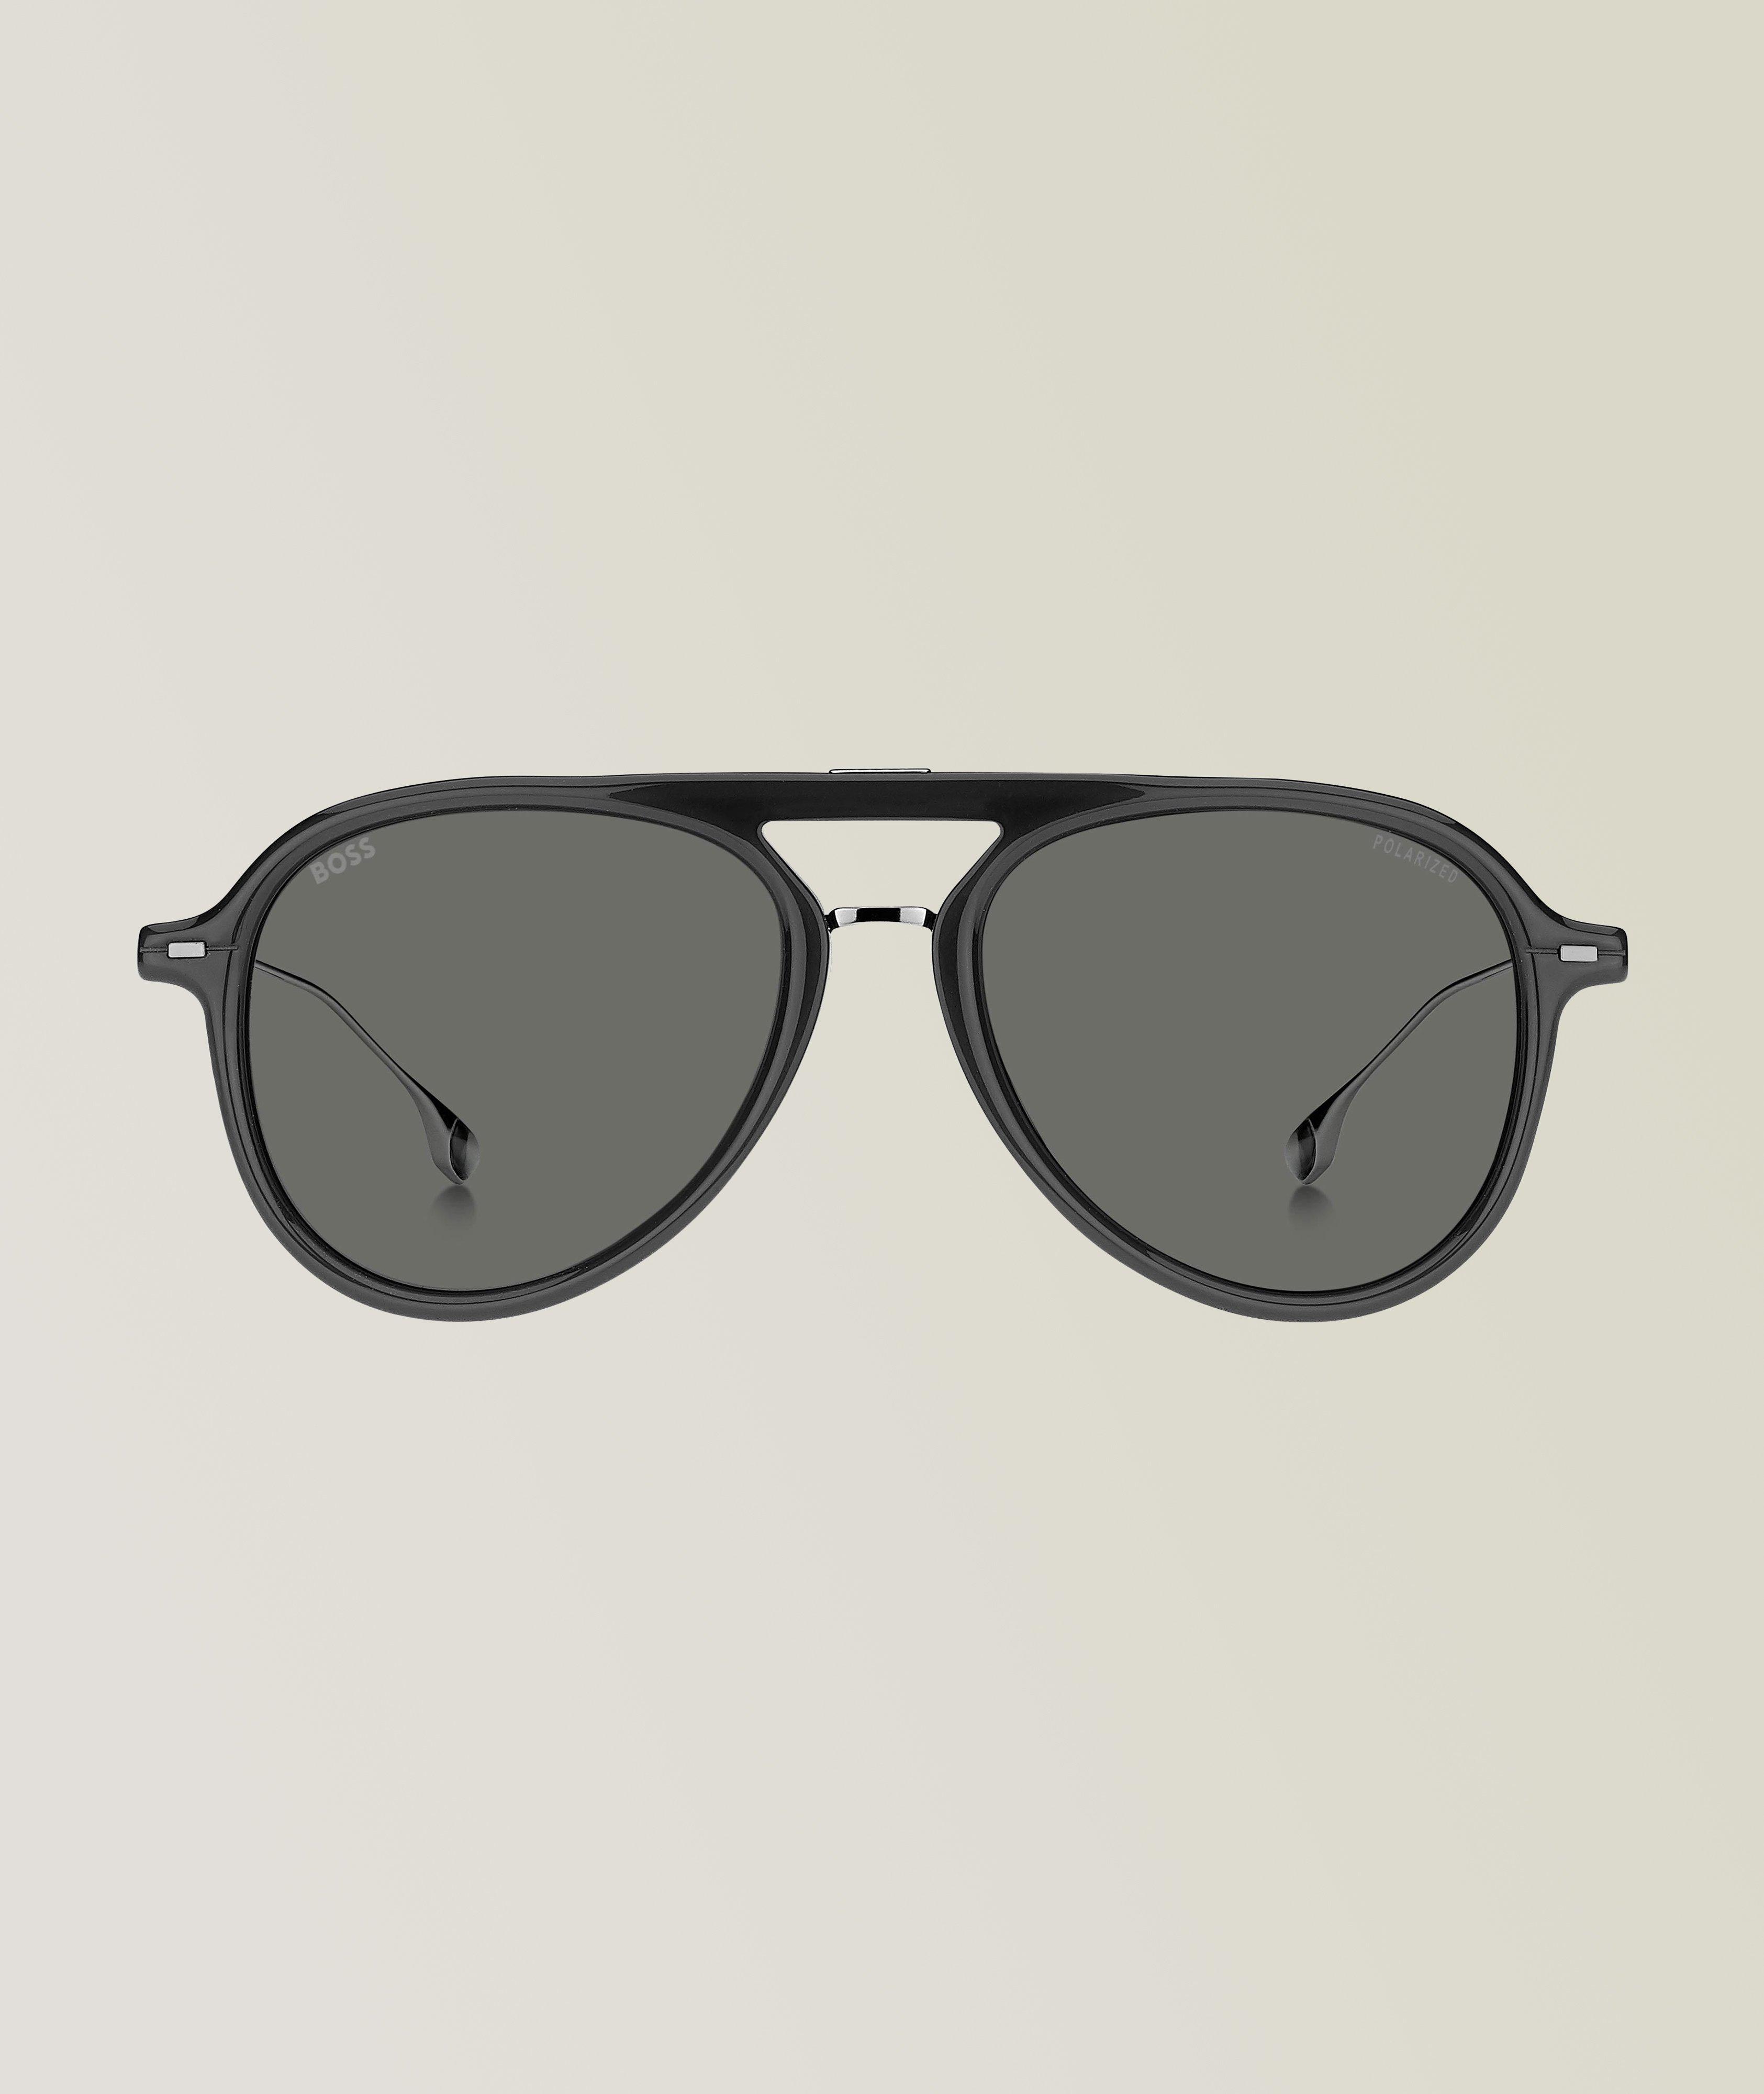 Hugo Boss Grey Sunglasses With Grey Polarized Lenses image 0